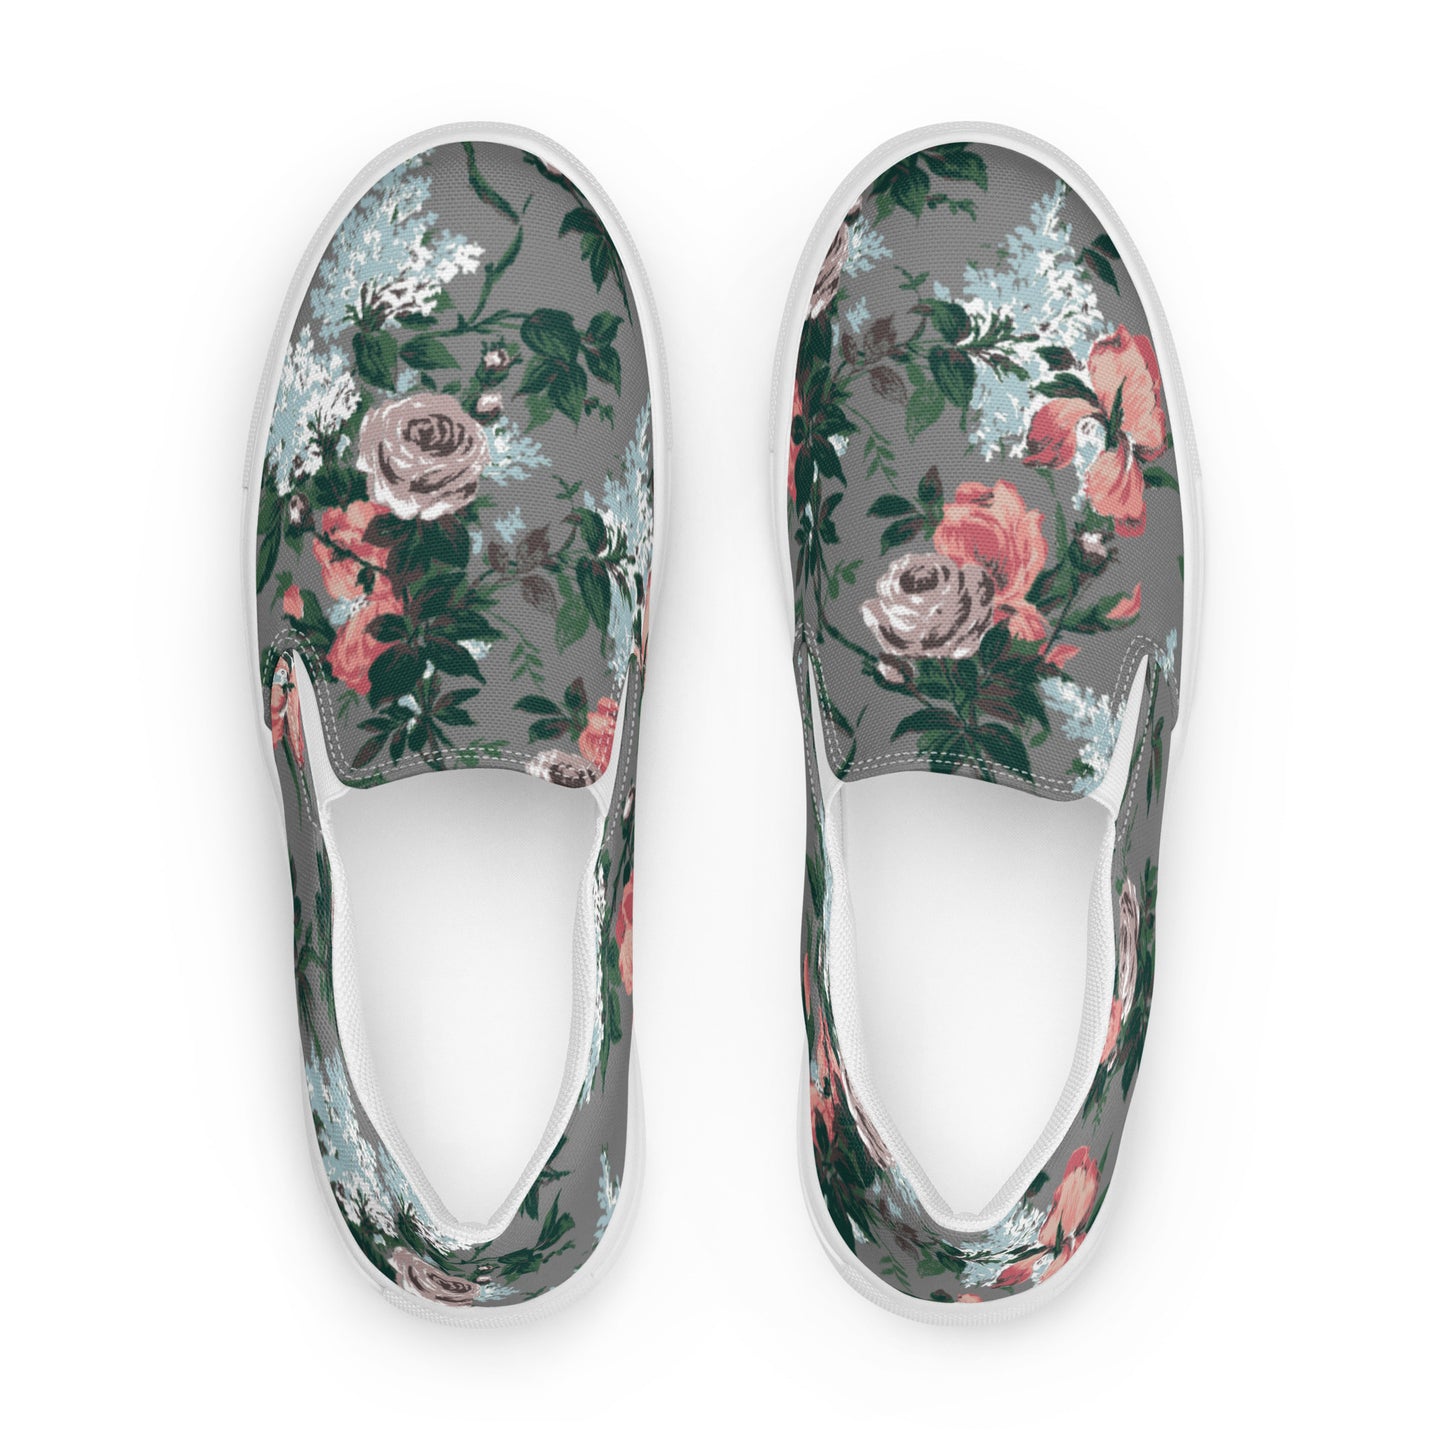 Women’s Canvas Slip-On Deck Shoe in J'Adore Paris Bella Roses Floral